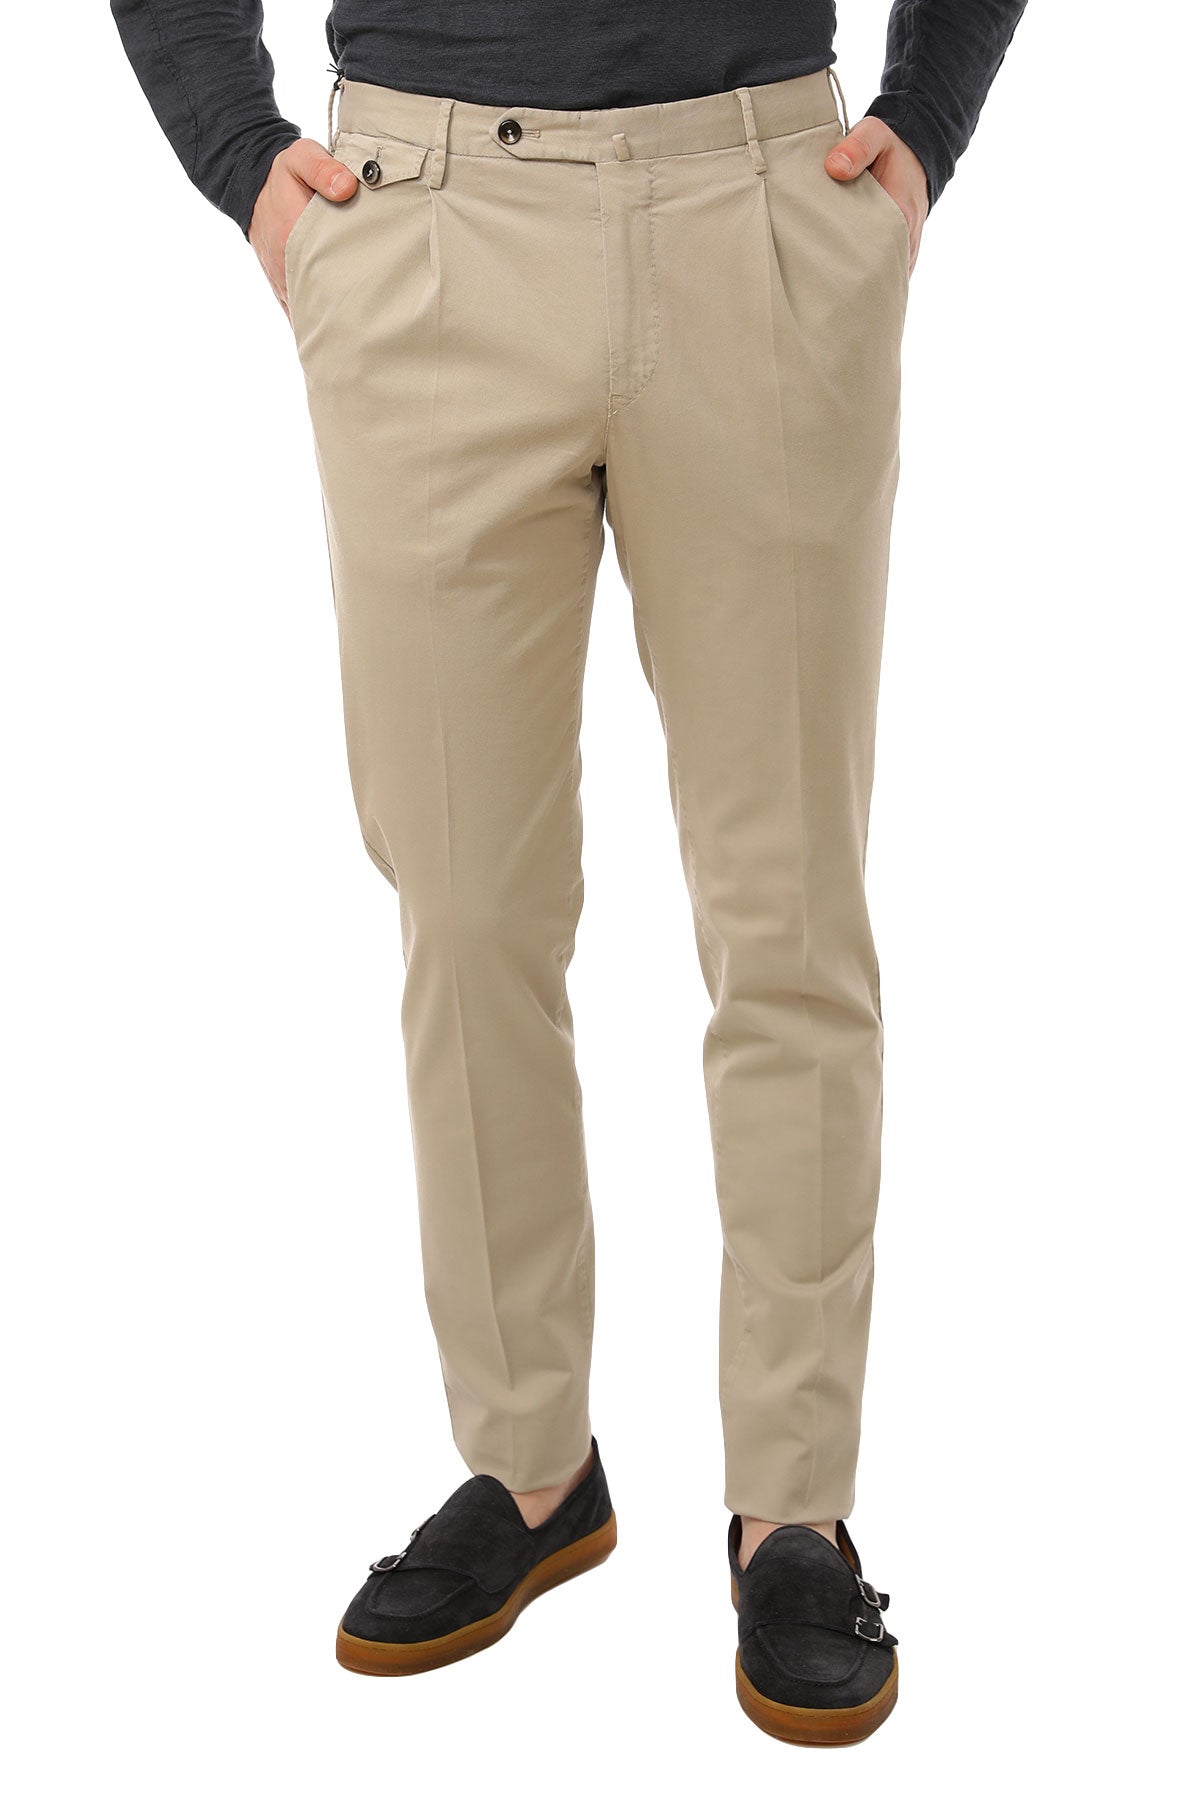 Pantaloni Torino Gentleman Fit Pantolon-Libas Trendy Fashion Store